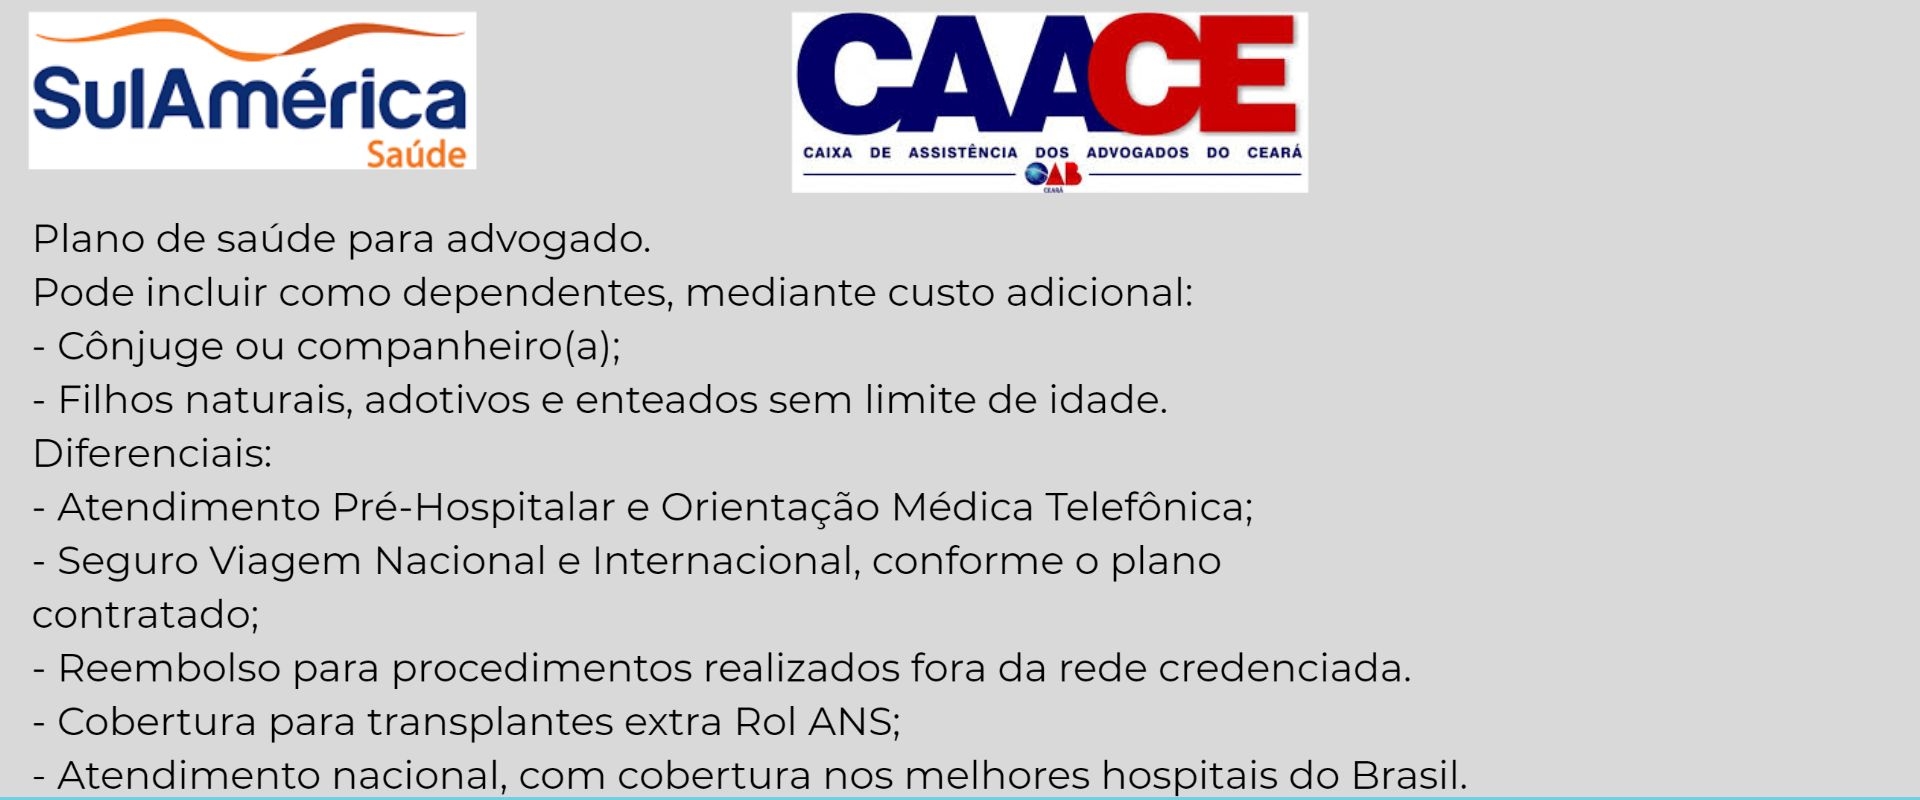 Sul América Saúde CAA-CE